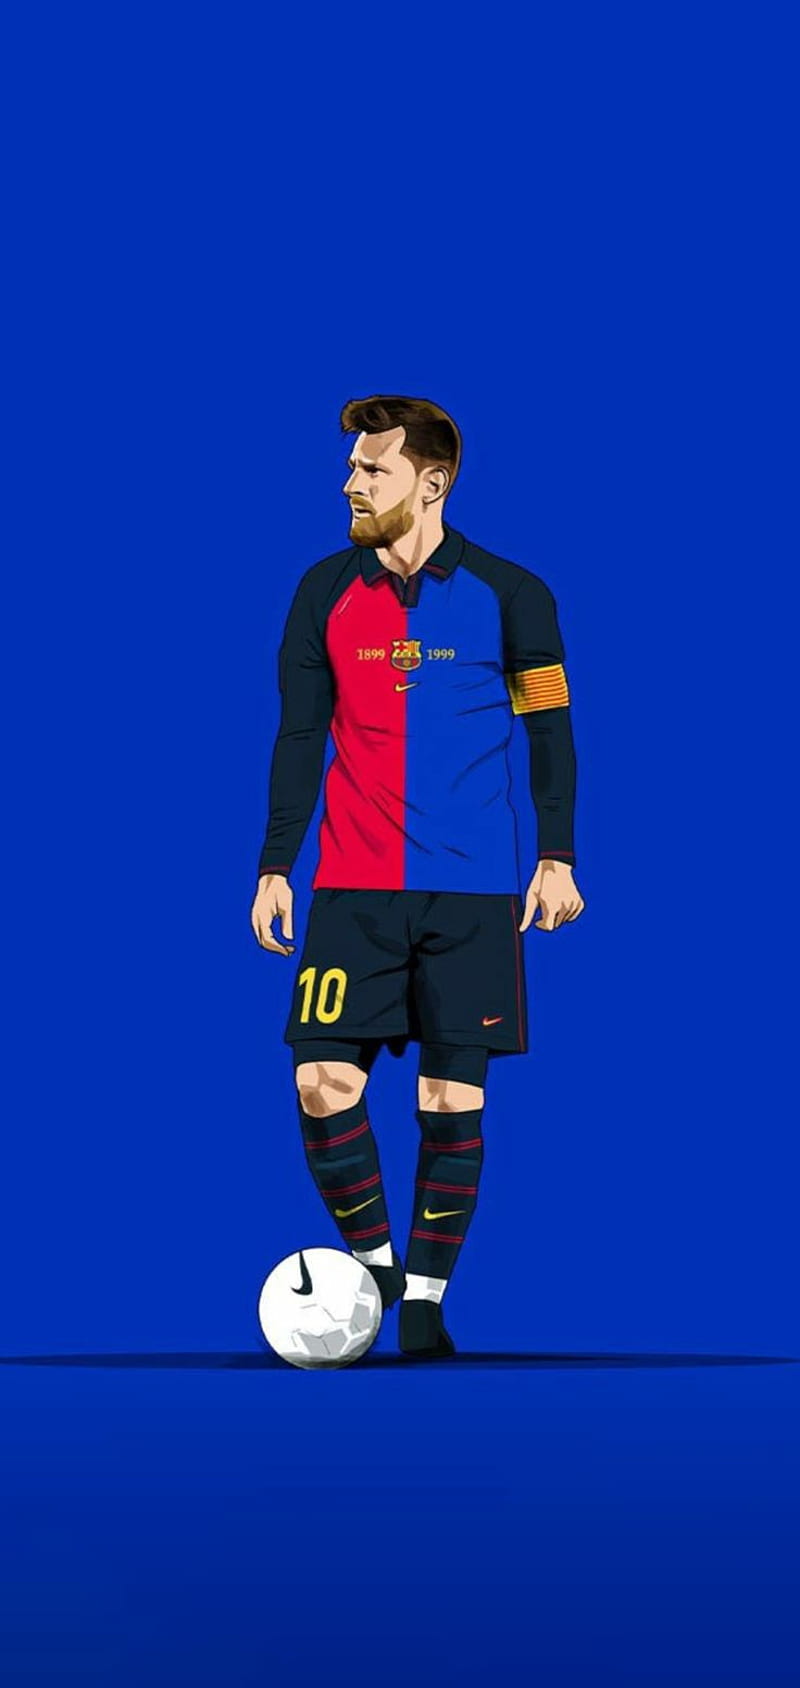 Nếu bạn là fan của Messi và yêu thích phong cách hoài cổ, những hình nền Messi thiết kế theo phong cách retro chắc chắn sẽ không làm bạn thất vọng. Với những bức ảnh được thiết kế độc đáo và tỉ mỉ, chúng tôi tin rằng đây sẽ là lựa chọn hoàn hảo cho màn hình máy tính của bạn.